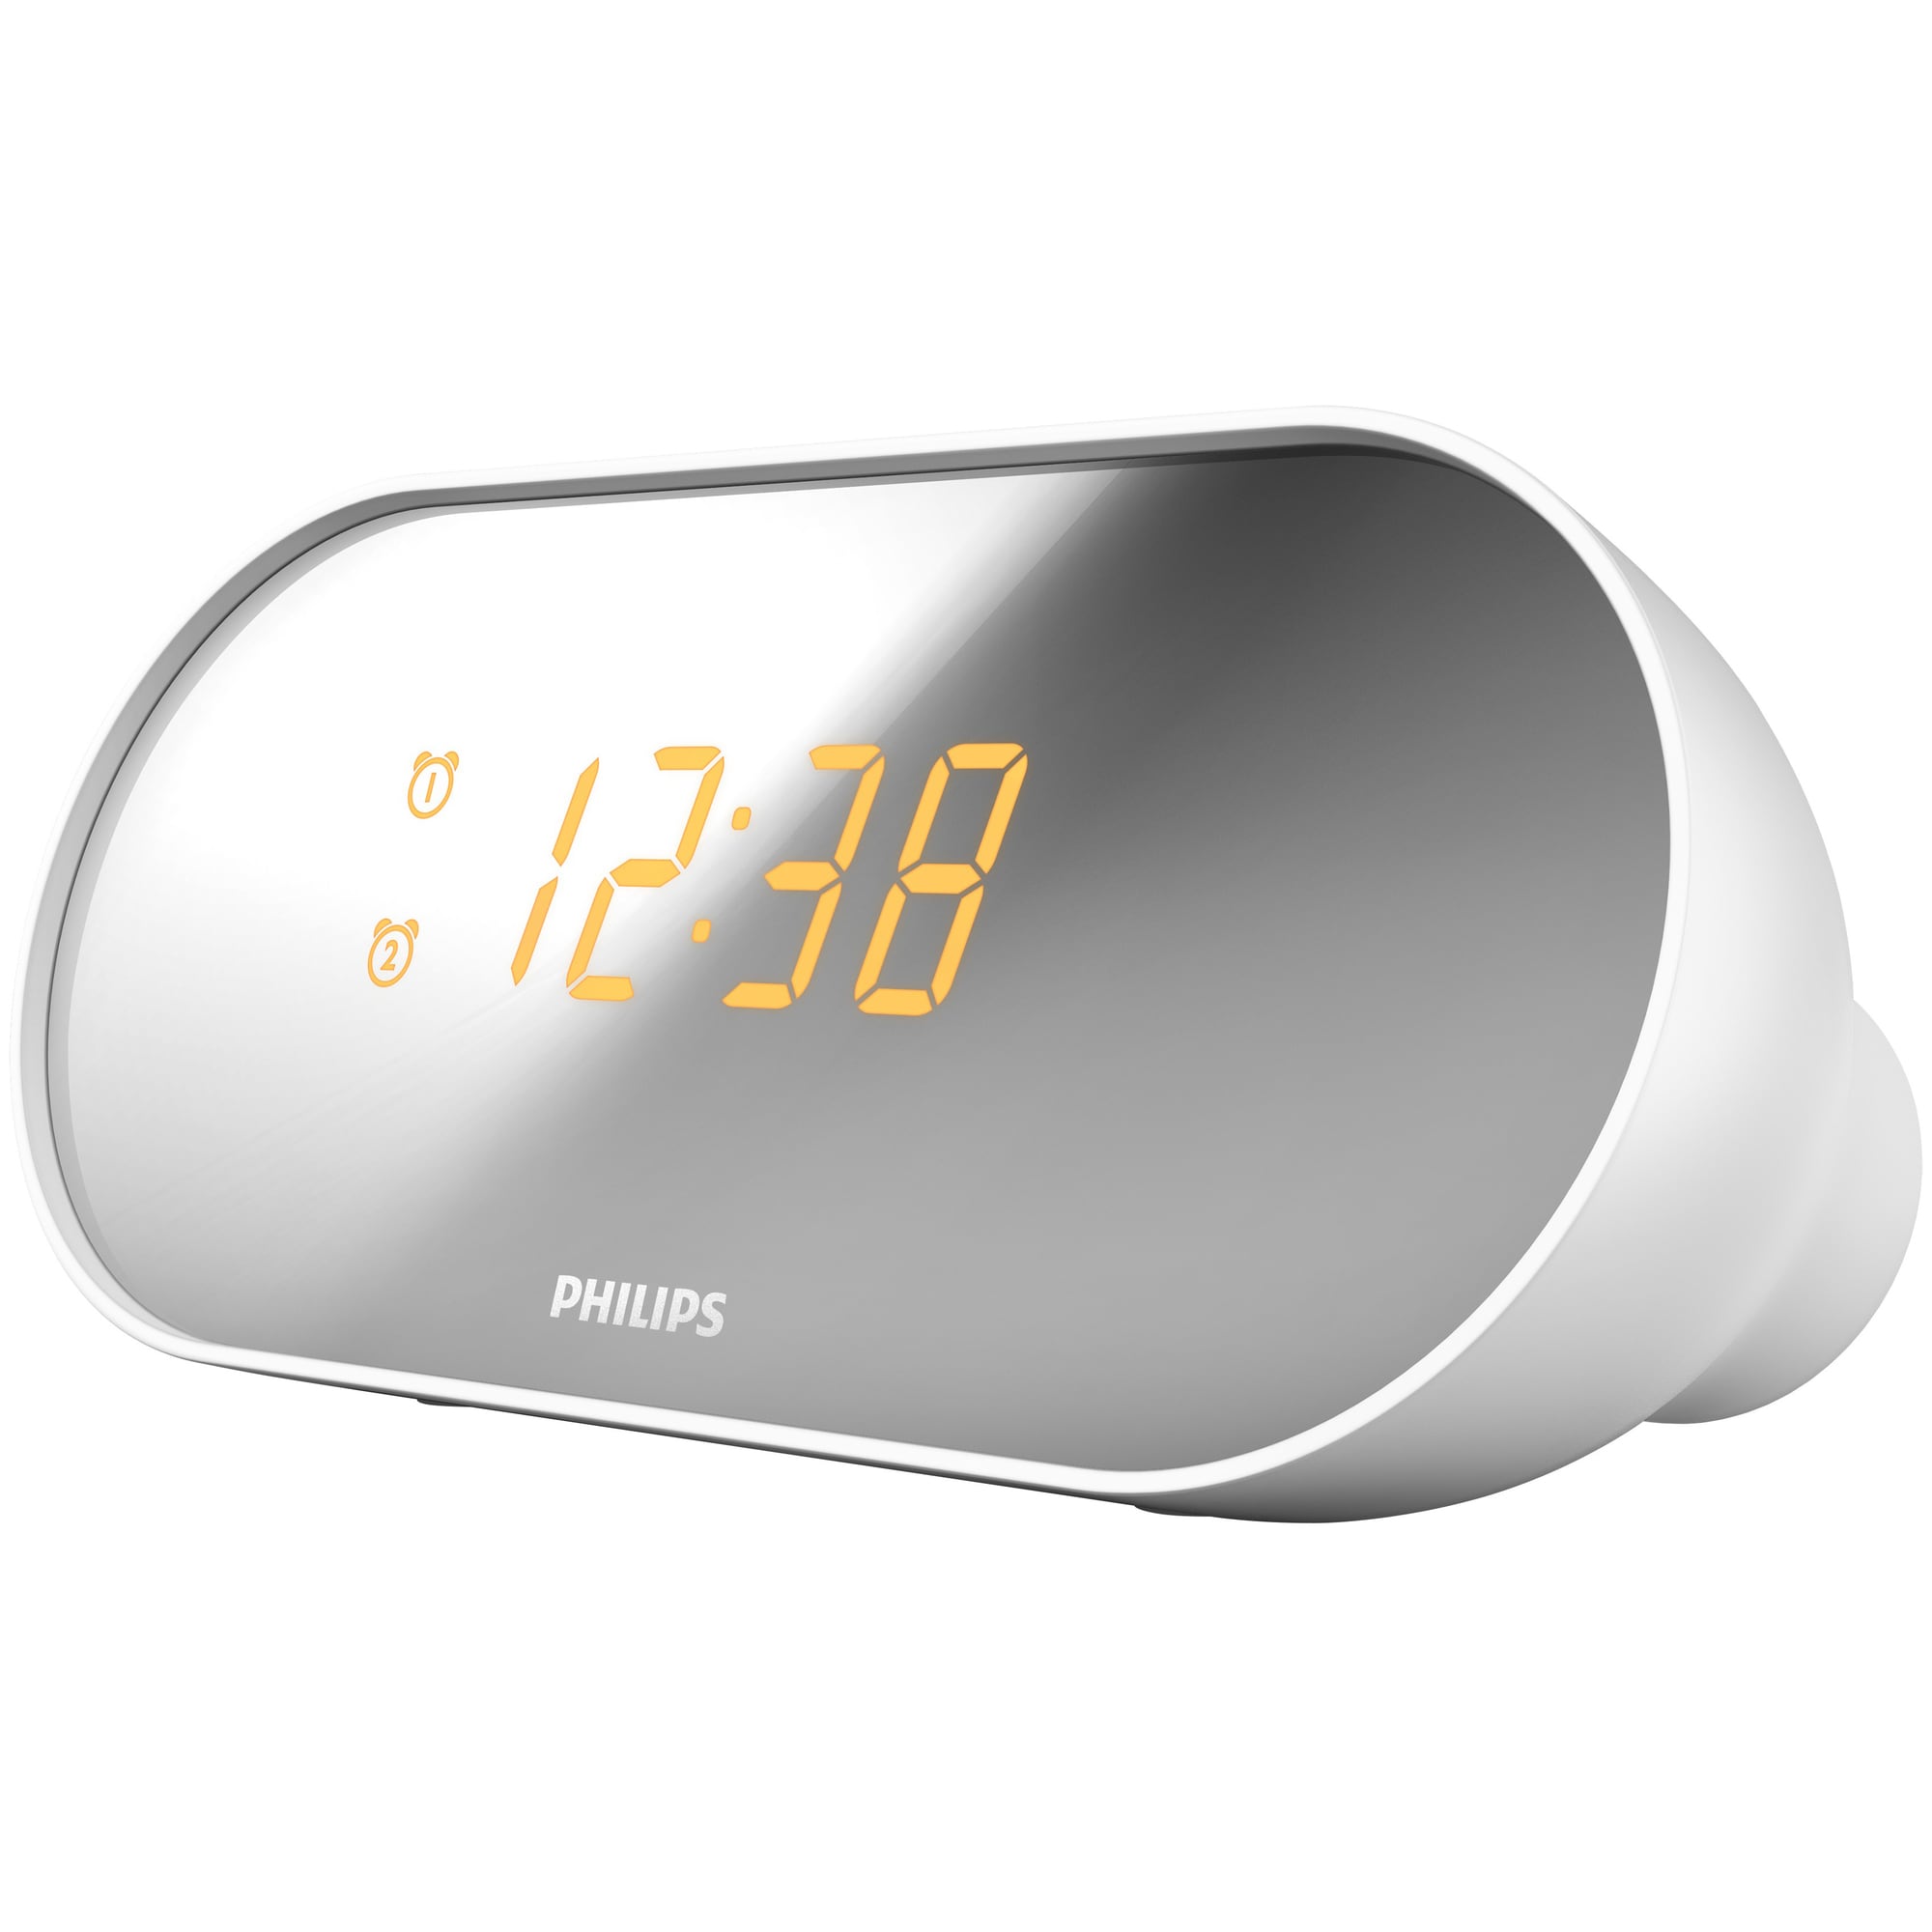 Philips AJ2000 Klockradio med alarm (vit/silver) - Väckarklocka ...